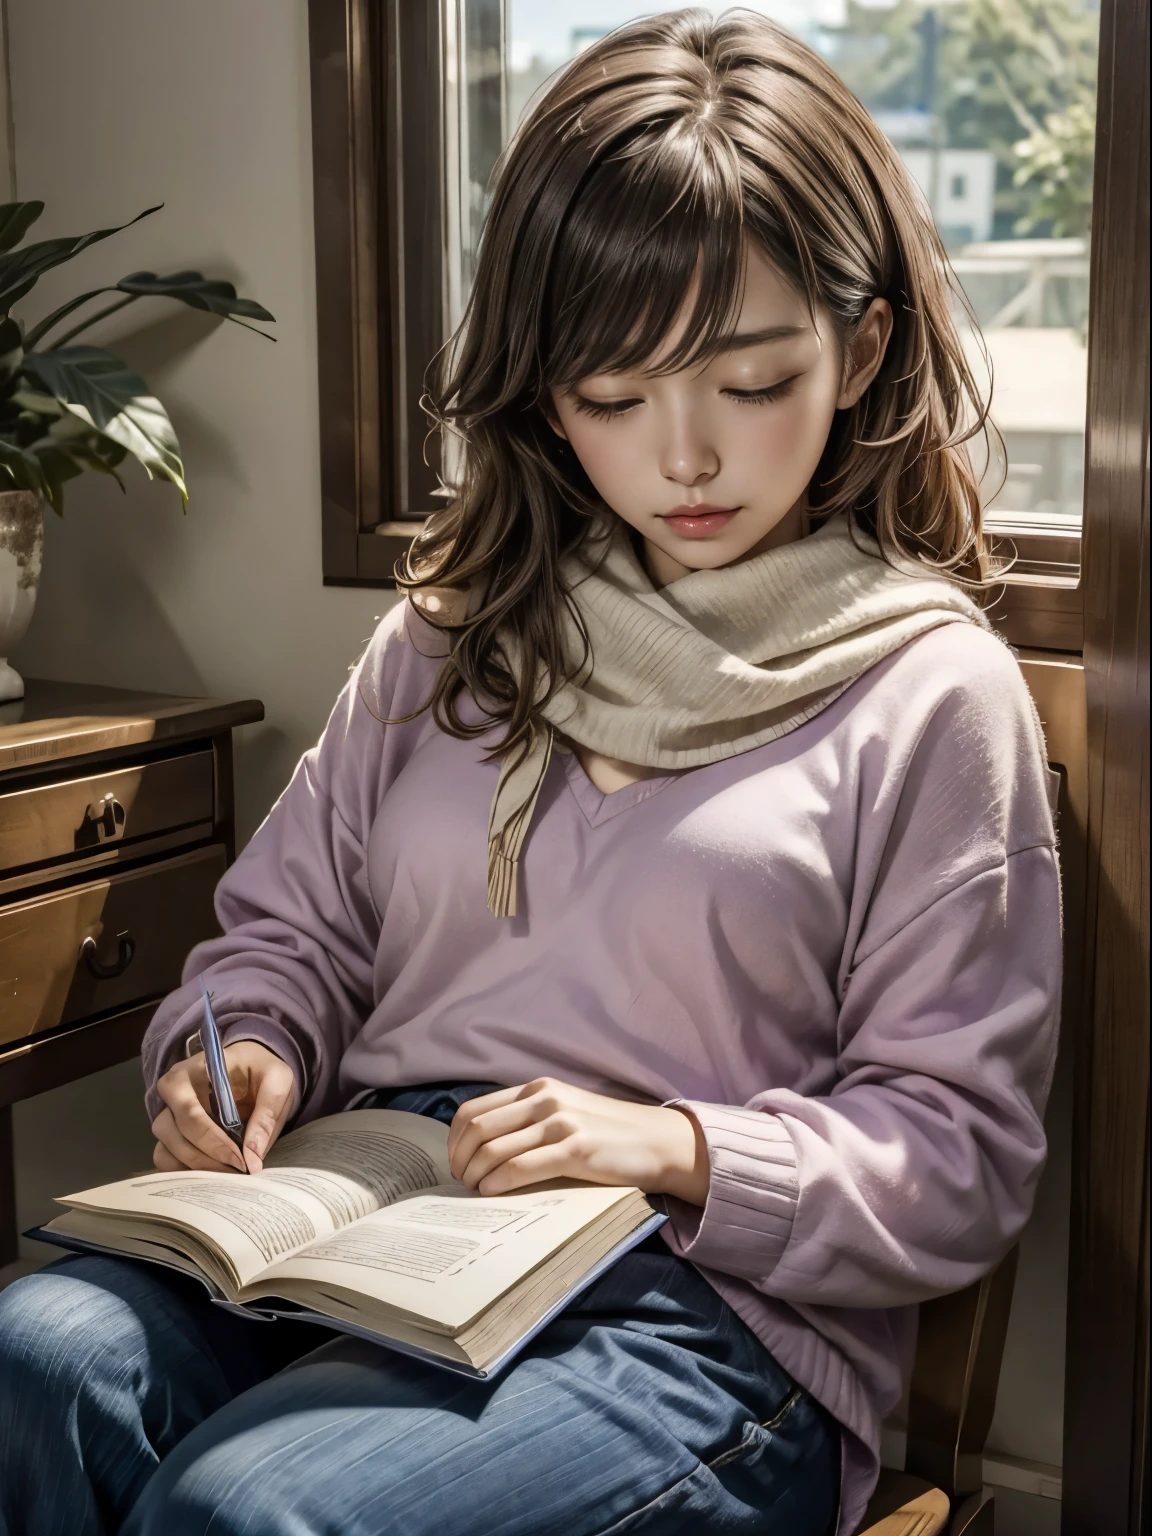 hermosa chica, Haru es Akebono, durmiendo, lectura